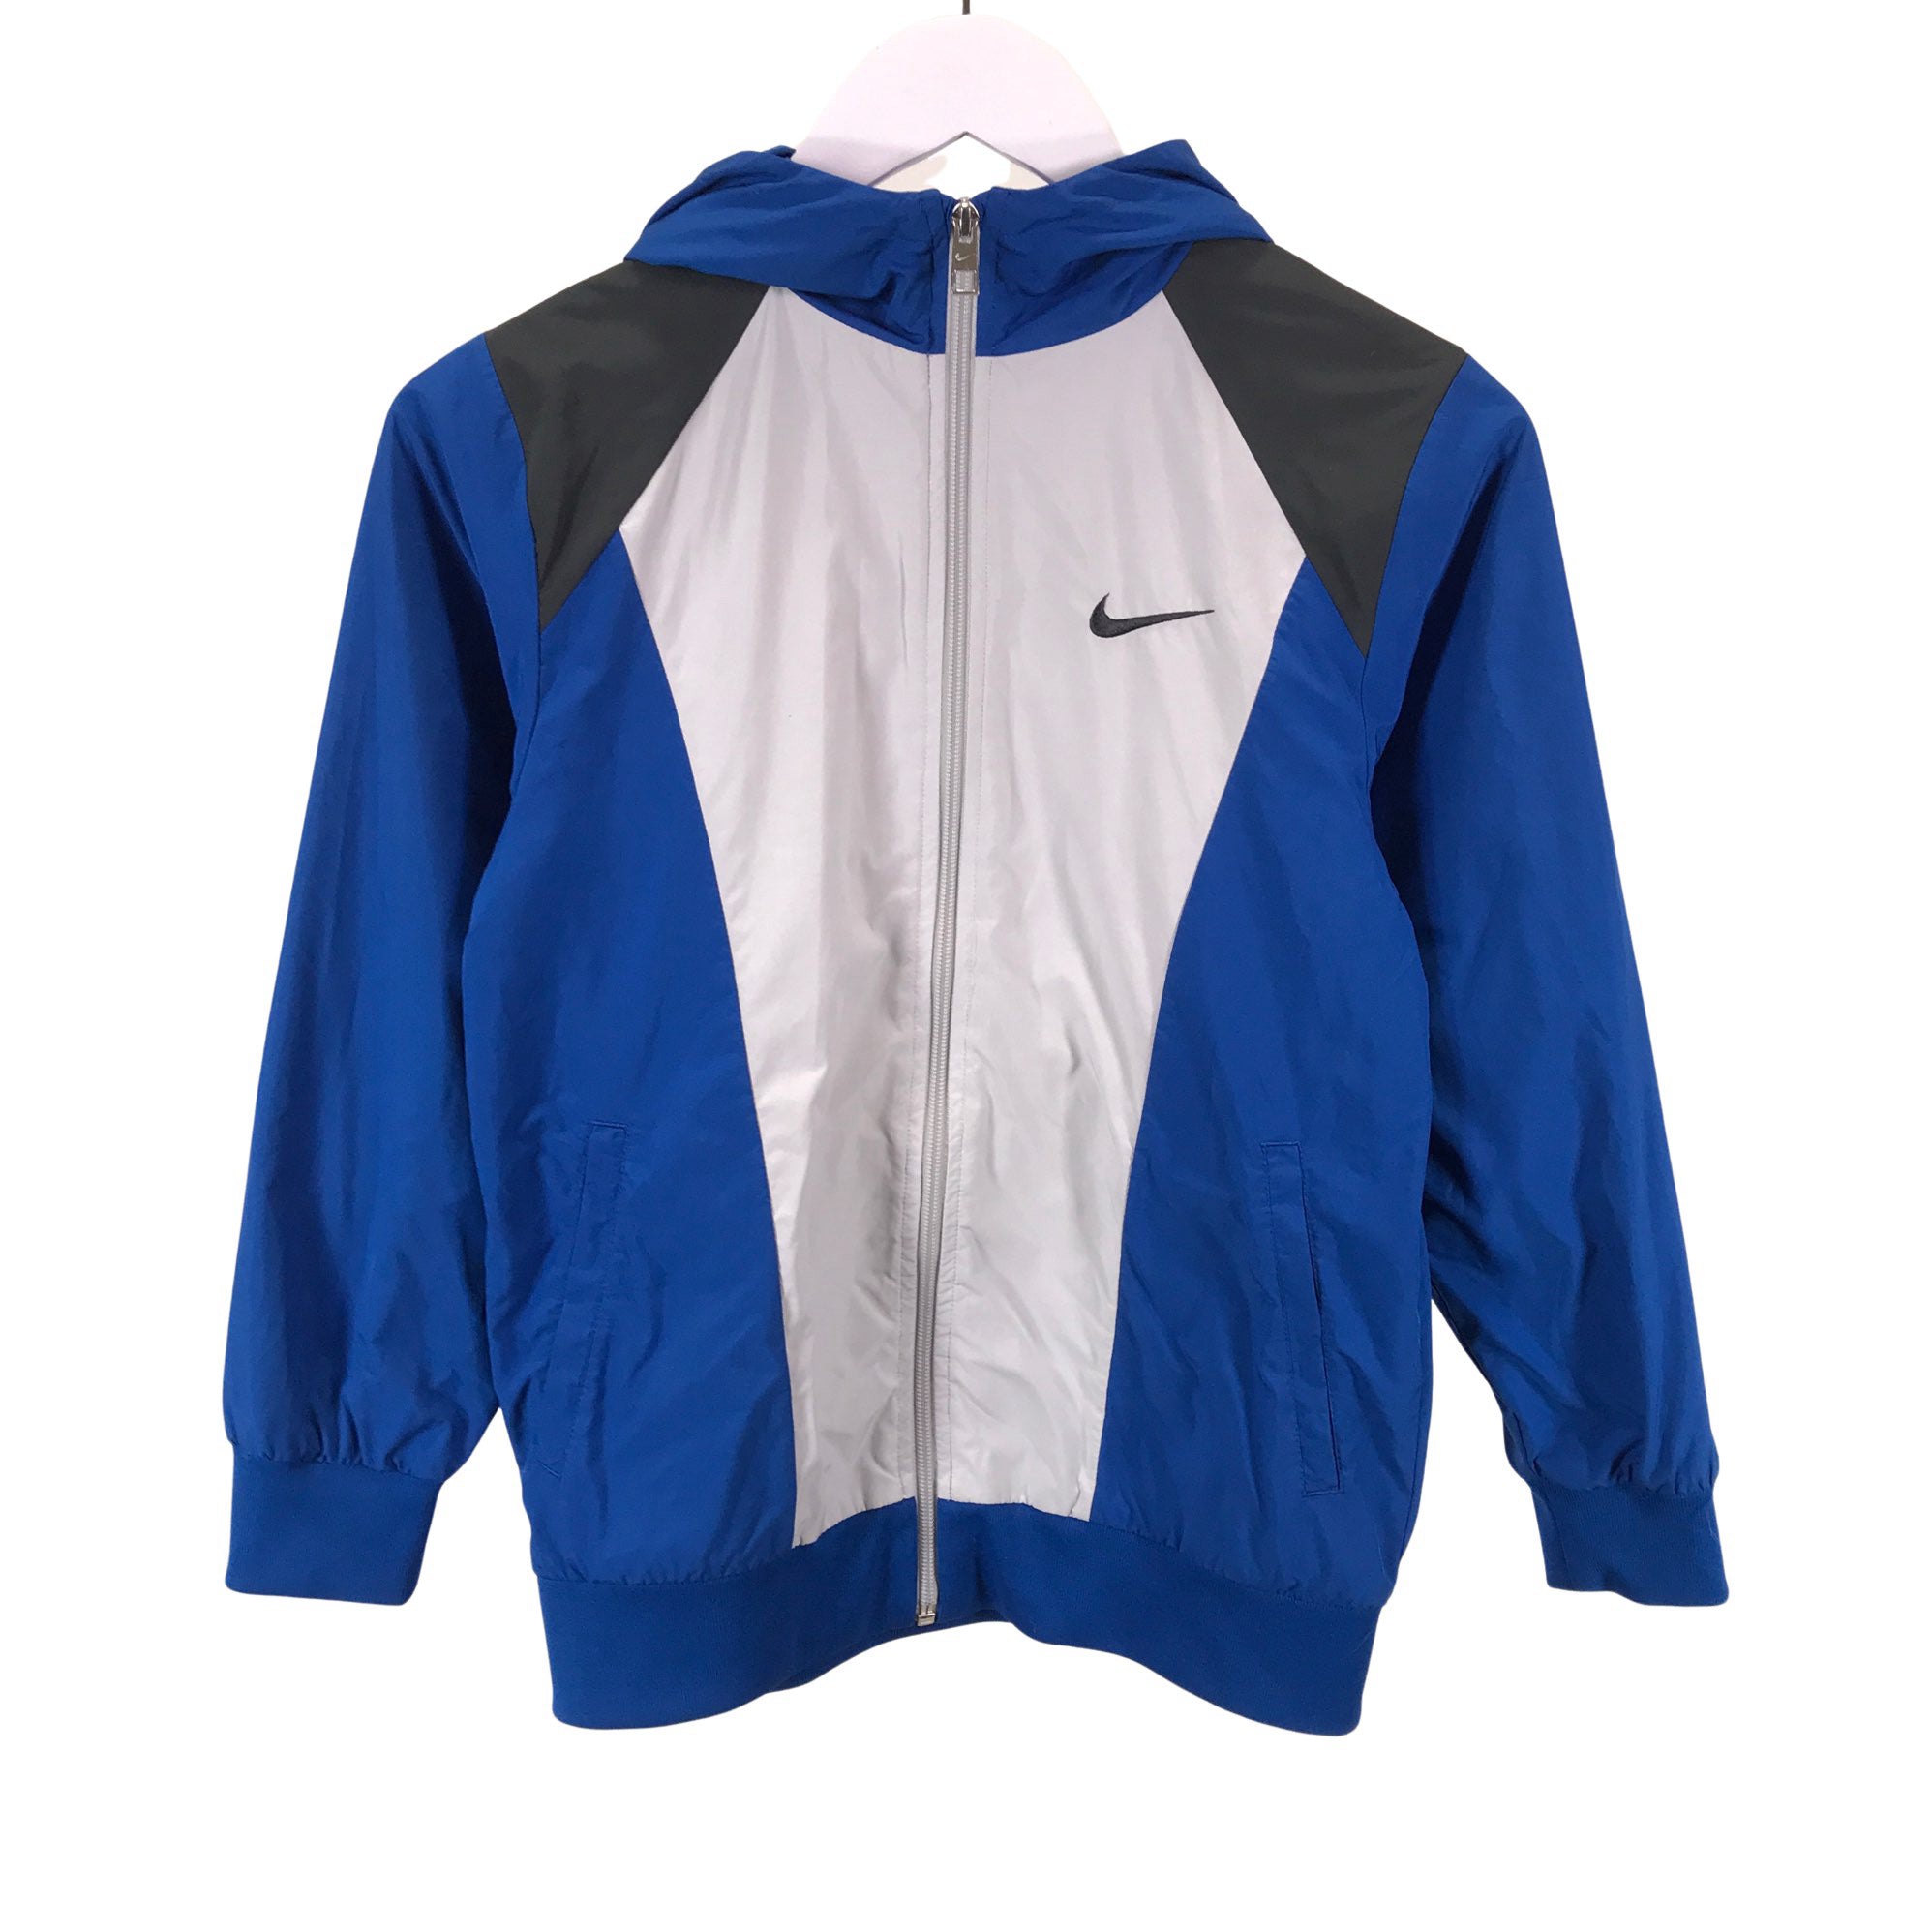 Boys' Nike jacket, size 146 - (Blue) | Emmy